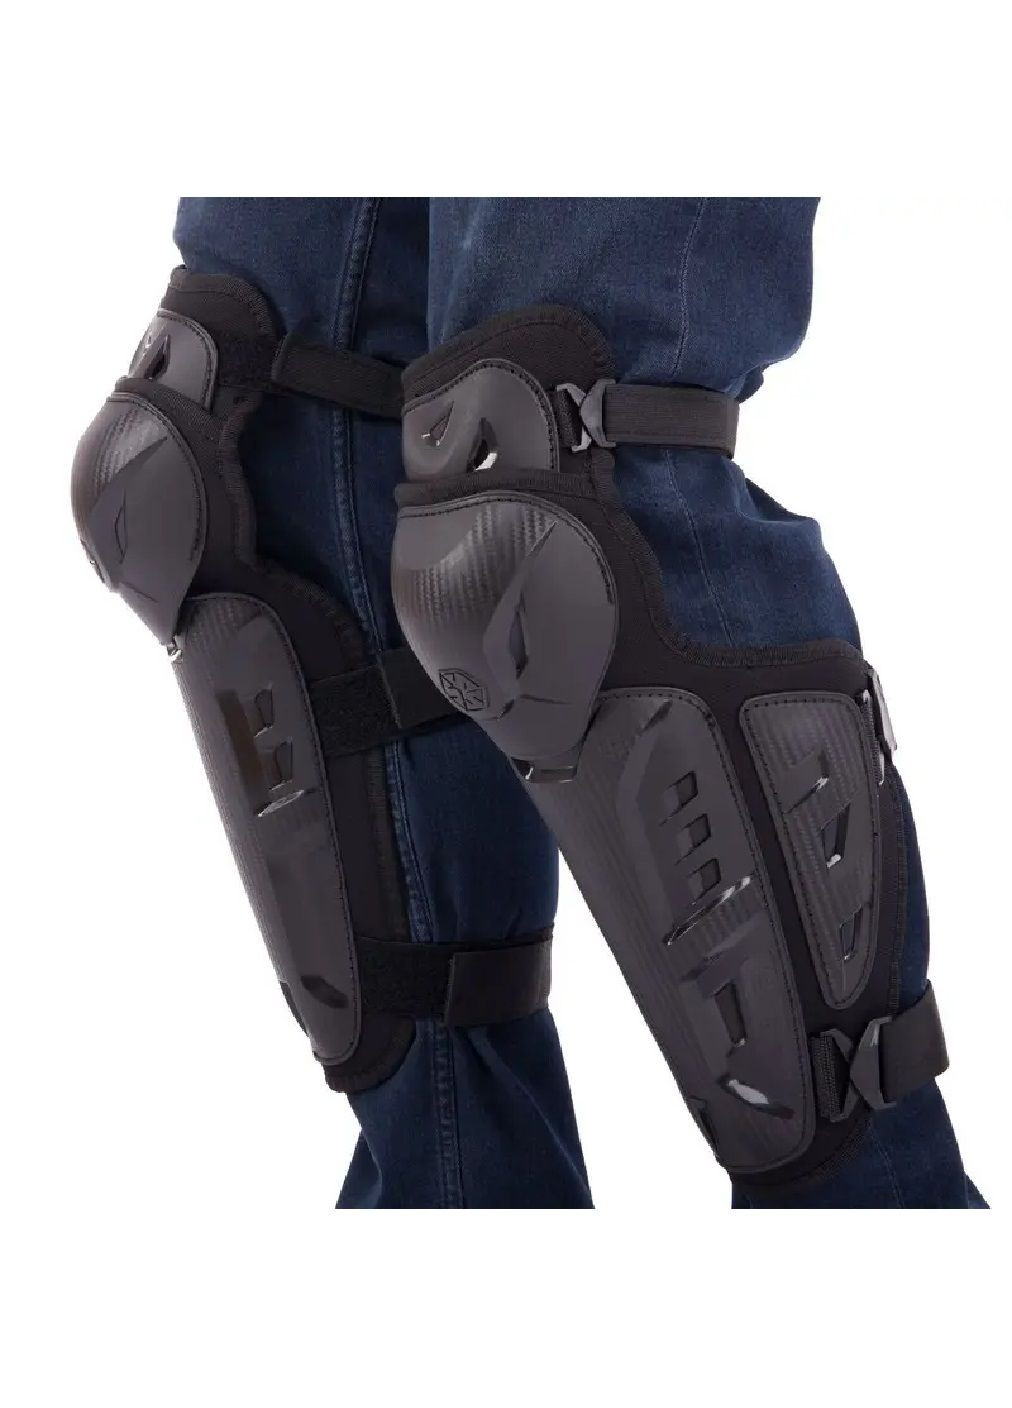 Мотонаколенники защитные с ремнями клипсами для защиты от травм помещаются под штаны мото защита (476508-Prob) Черные Unbranded (283250526)